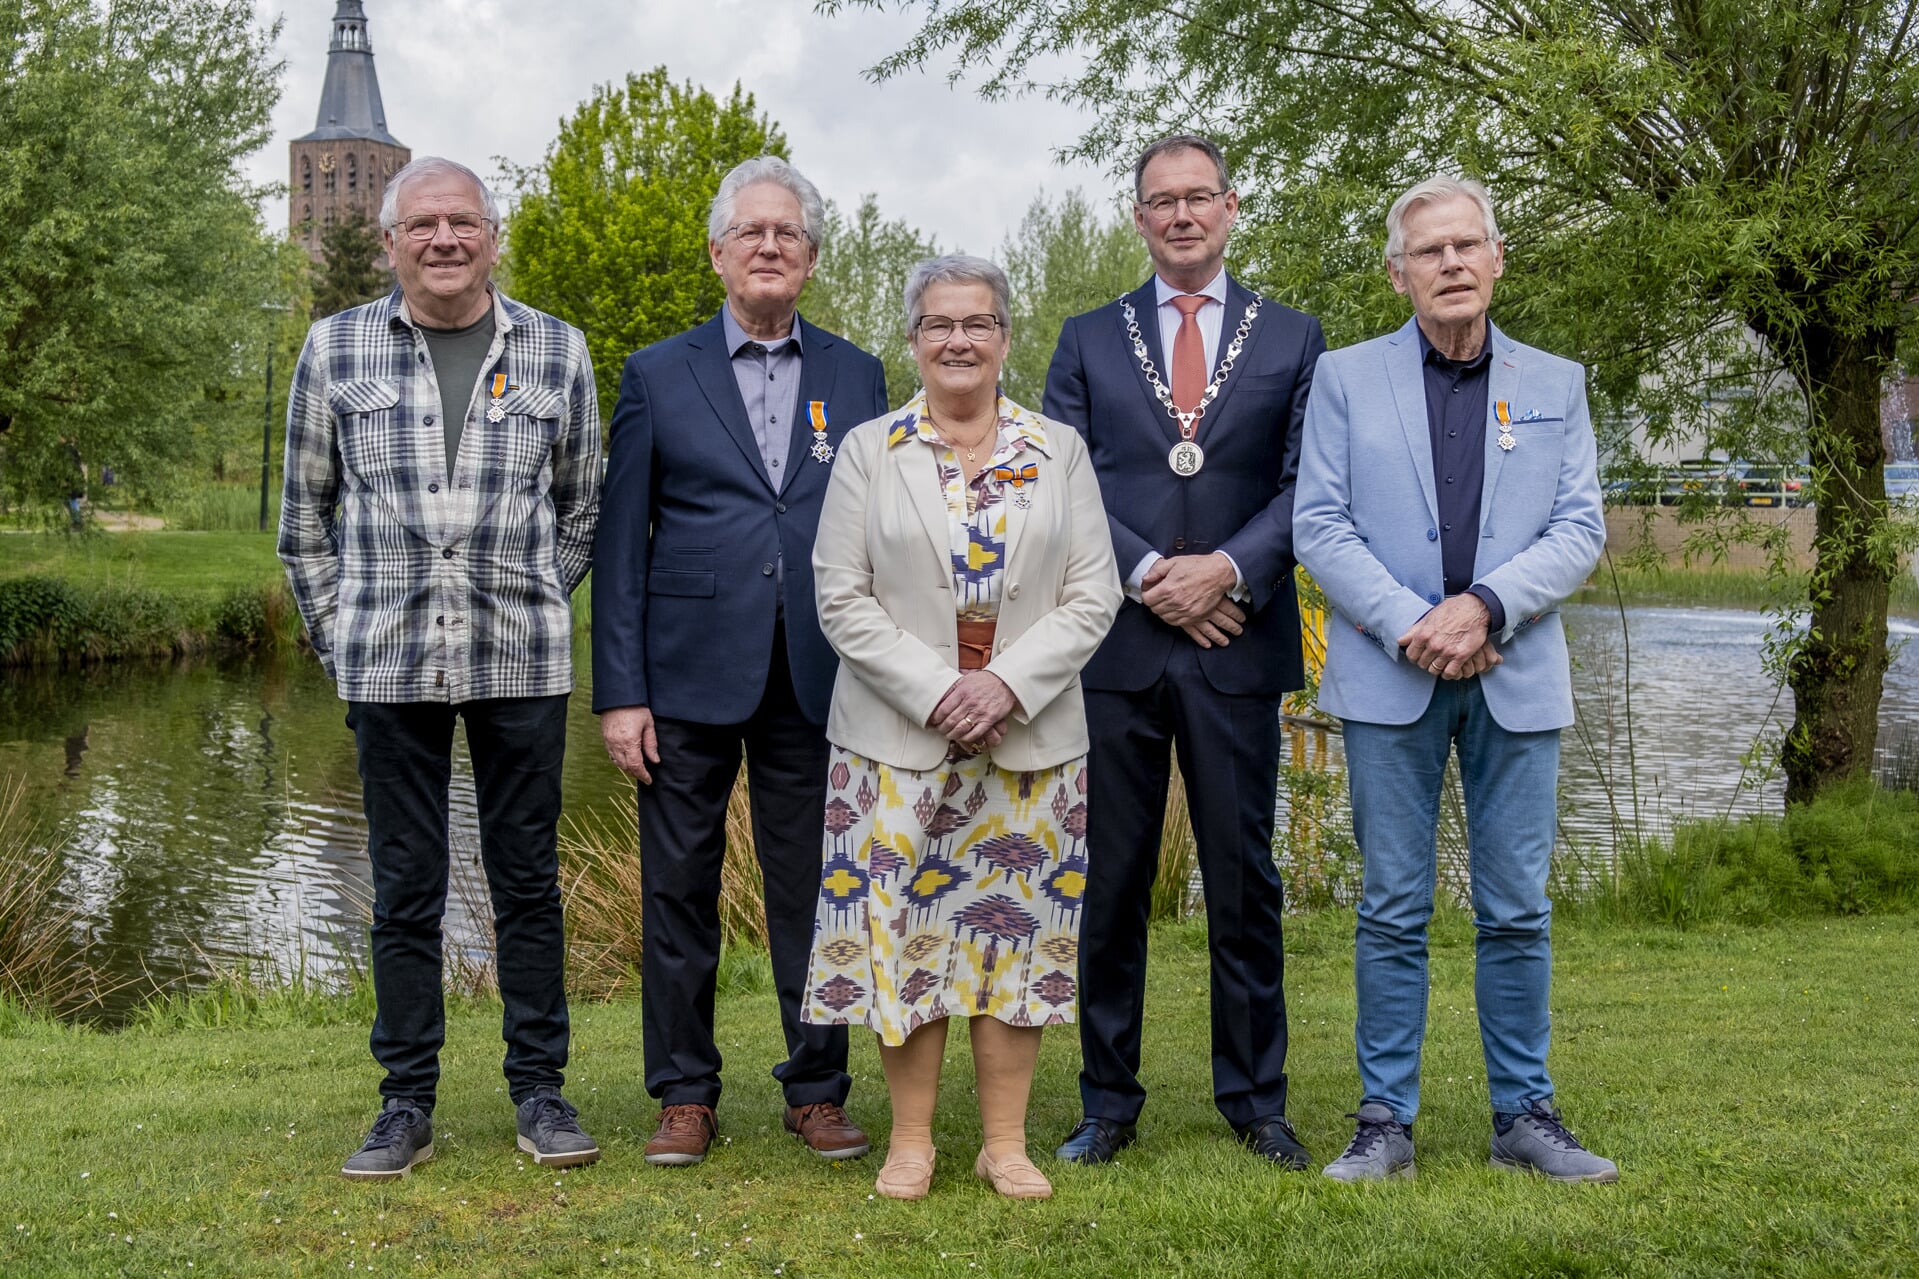 Van links naar rechts: Jan van Lierop, Gerrit van der Zalm, Maria Smeltink-van Esch, burgermeester Ronald van Meygaarden en Frank de Bont. Rob Janssen ontbreekt op de foto; hij kreeg zijn lintje in Vught.